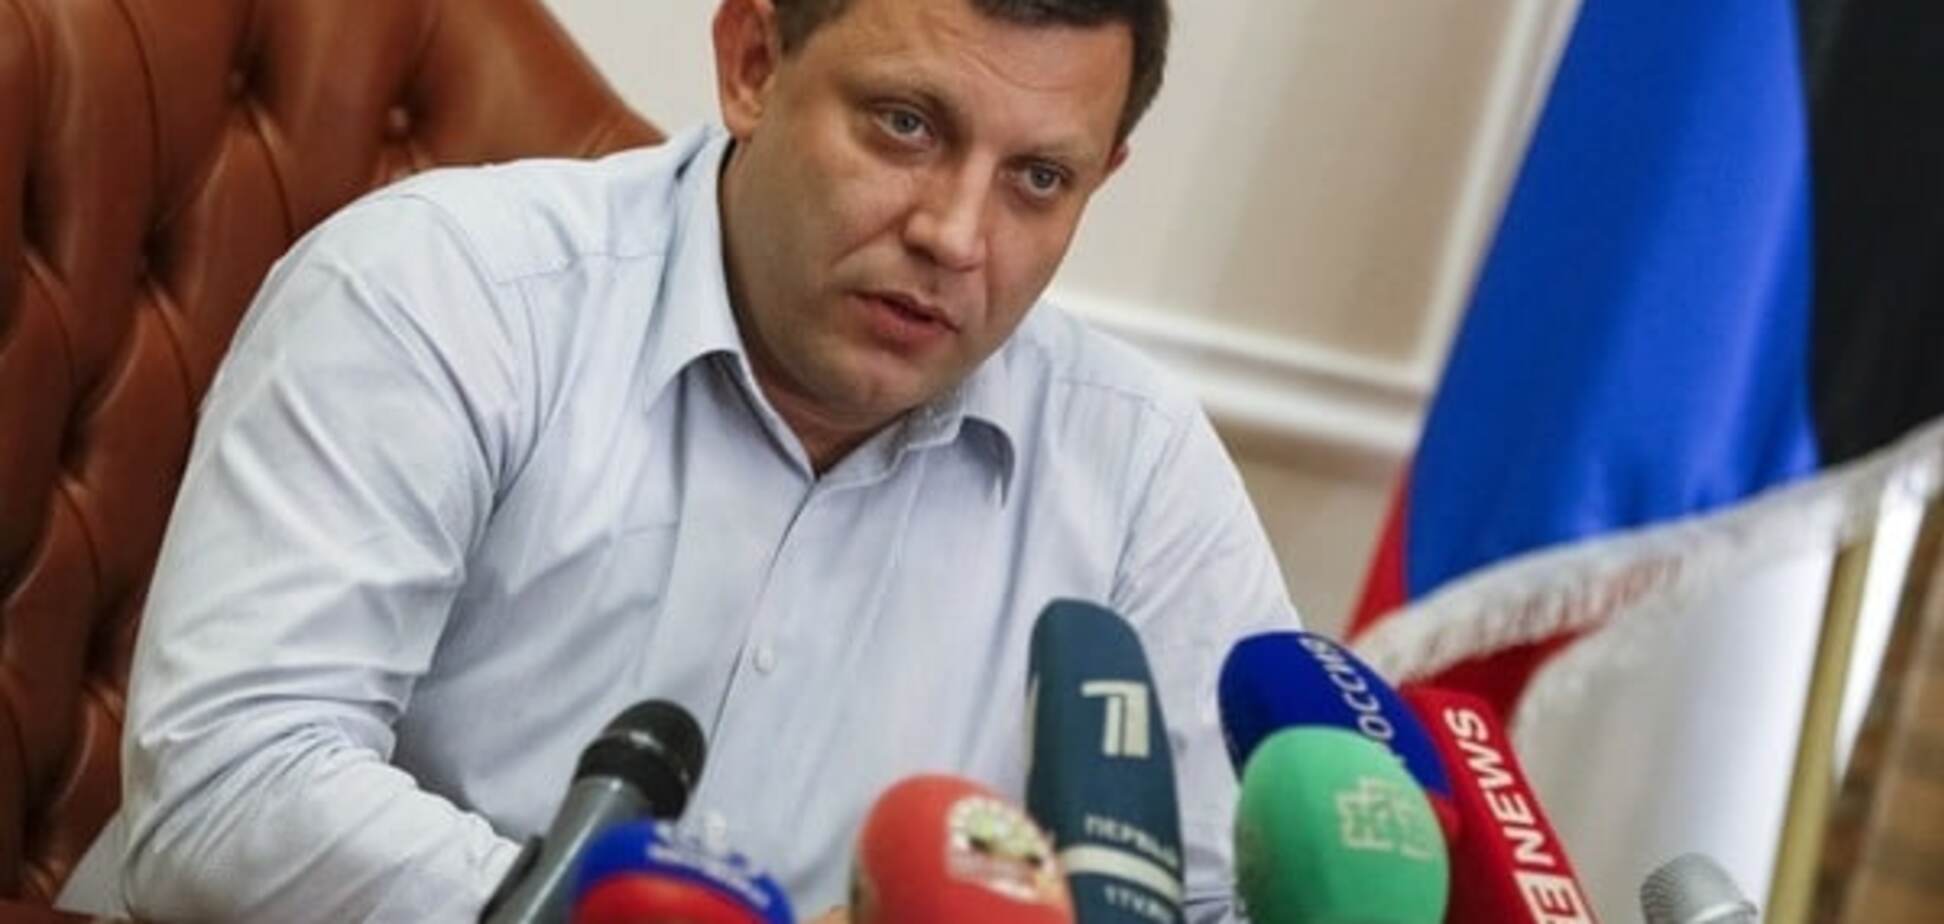 Все 'головы' решил поменять: Захарченко назначил 'и.о. мэра' Горловки очередного уголовника. Опубликован документ